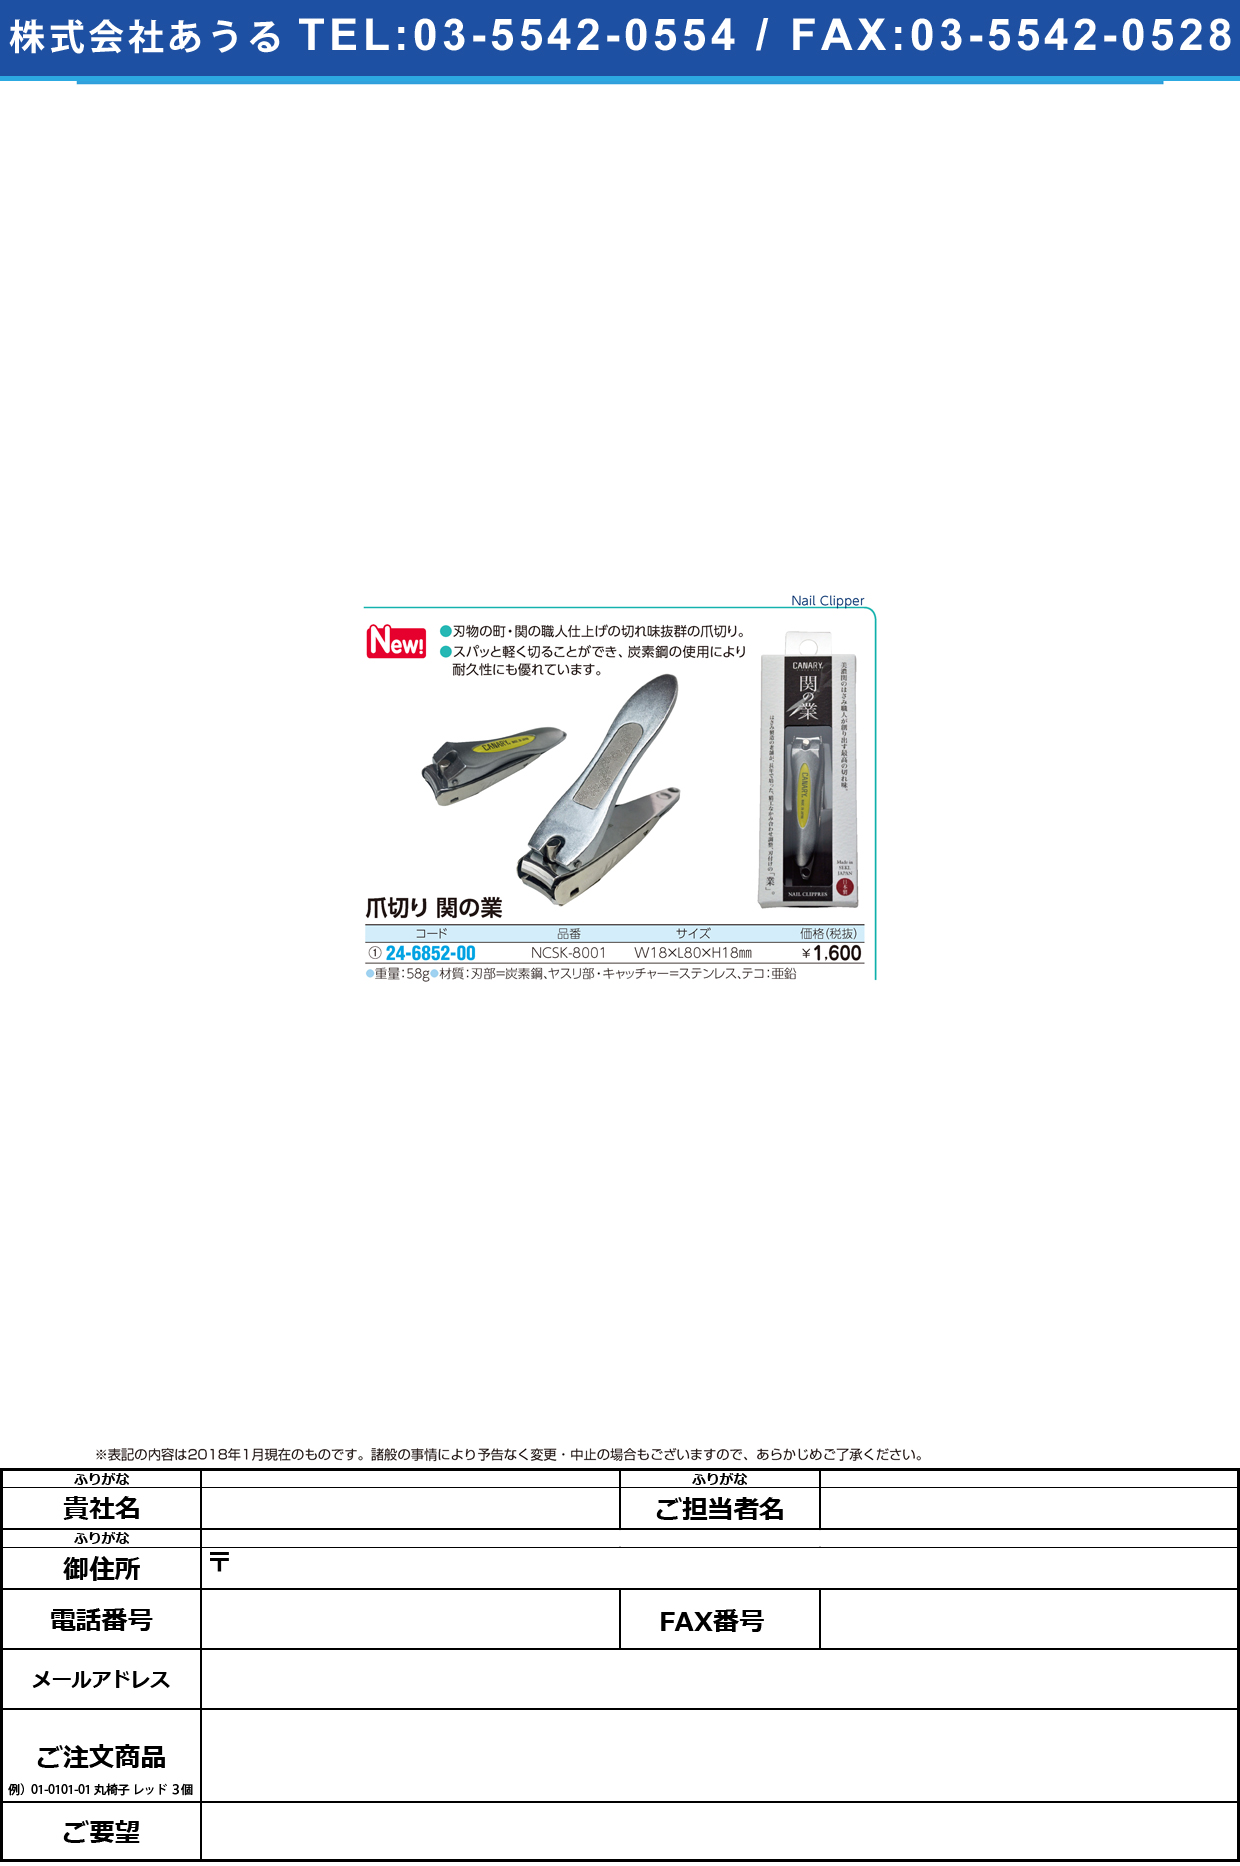 (24-6852-00)爪切り関の業 NCSK-8001 ﾂﾒｷﾘｾｷﾉﾜｻﾞ【1本単位】【2018年カタログ商品】